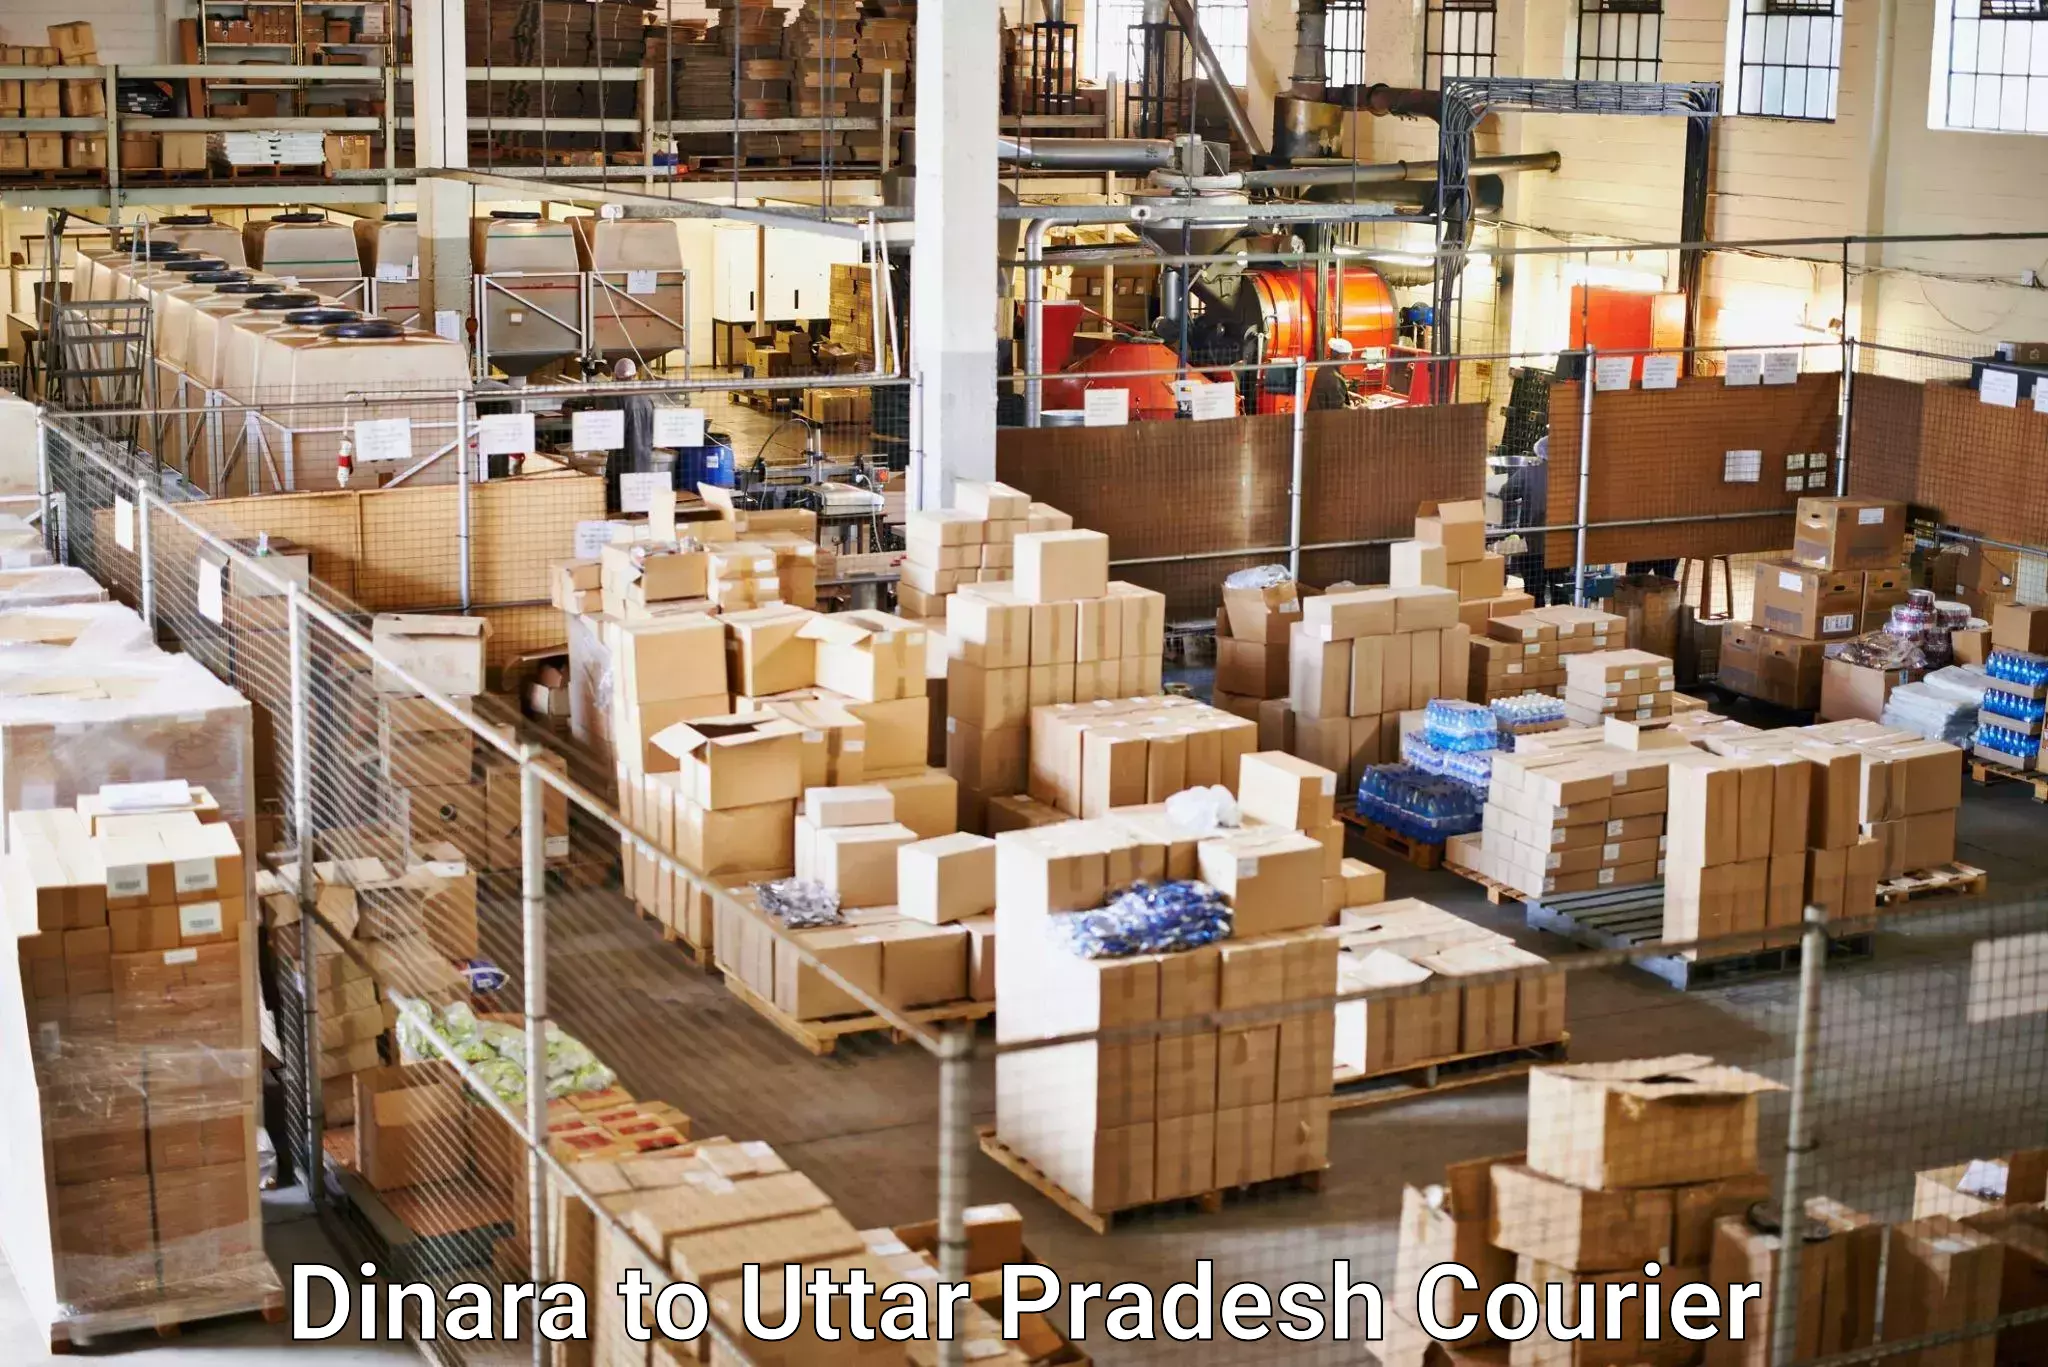 Comprehensive shipping services Dinara to Mehnagar